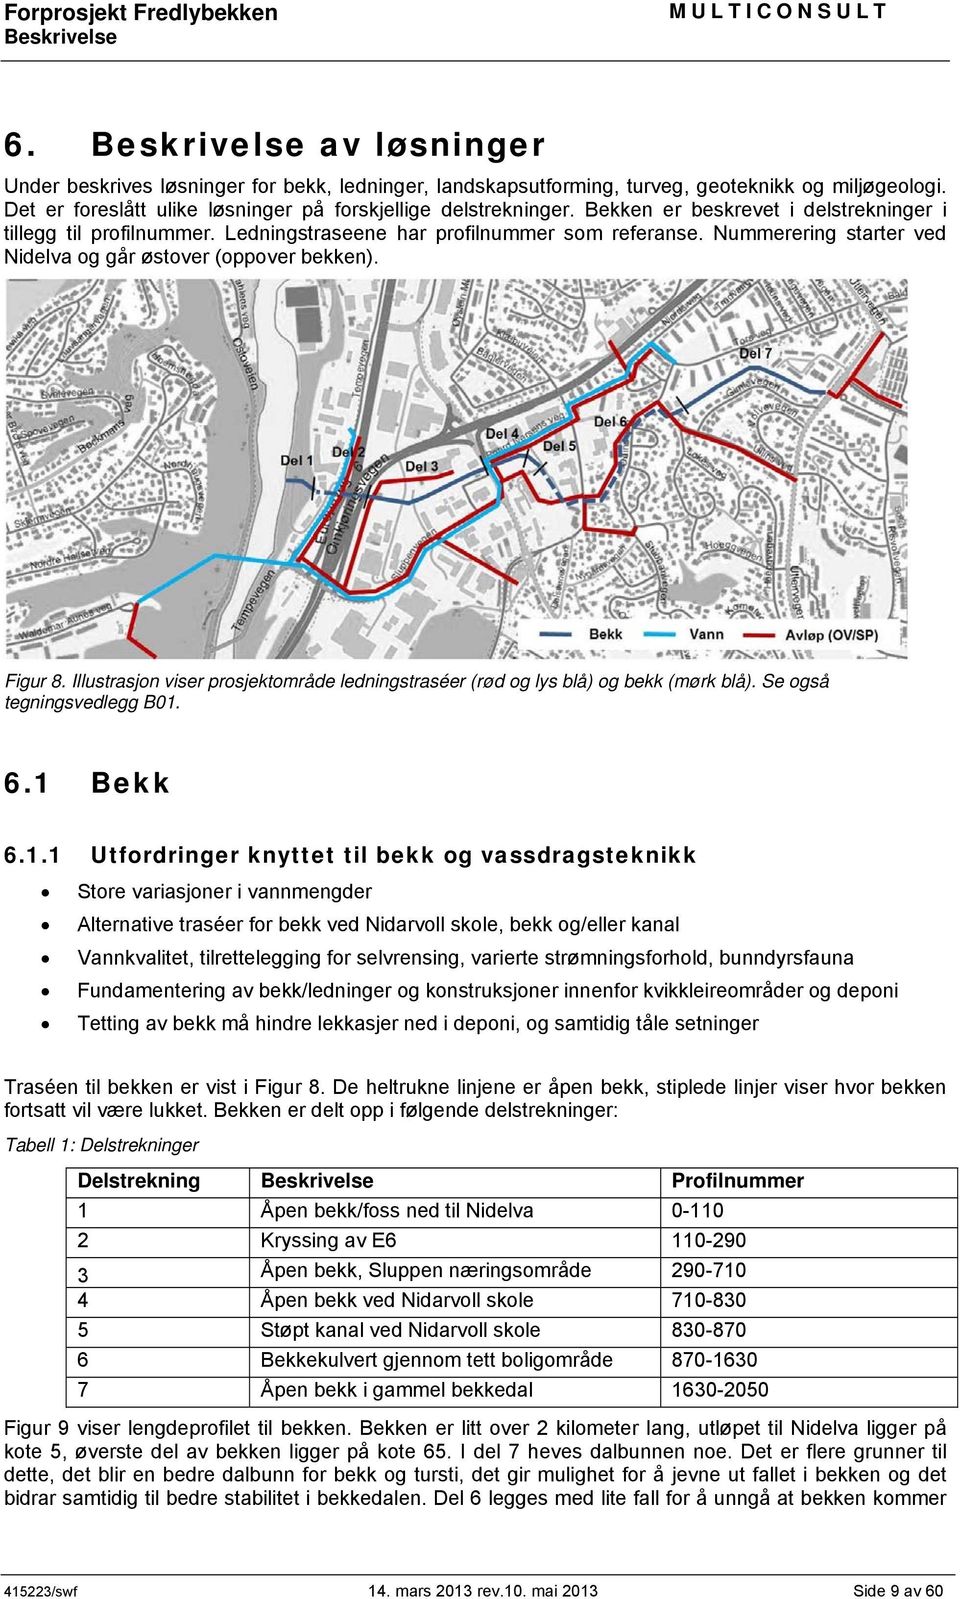 Illustrasjon viser prosjektområde ledningstraséer (rød og lys blå) og bekk (mørk blå). Se også tegningsvedlegg B01.